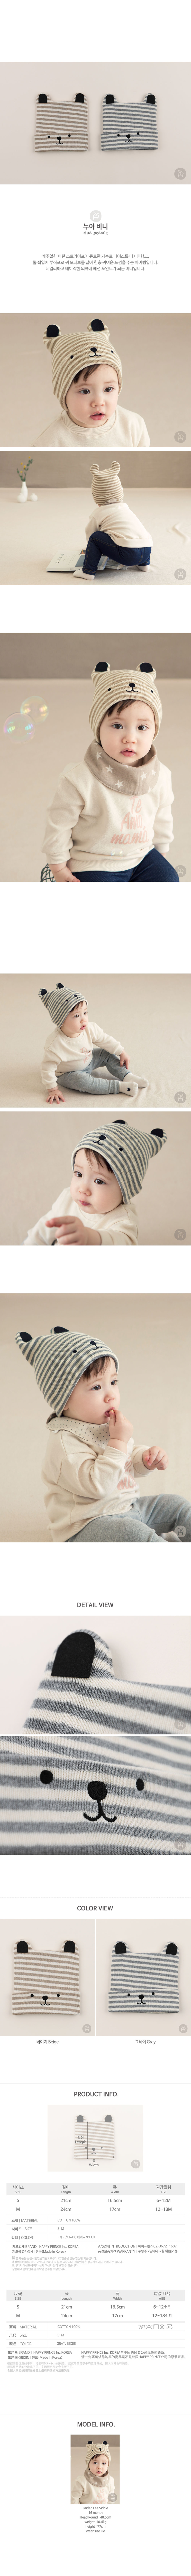 韓國 Happy Prince Nua Beanie條紋小熊純棉嬰兒寶寶帽 灰色S